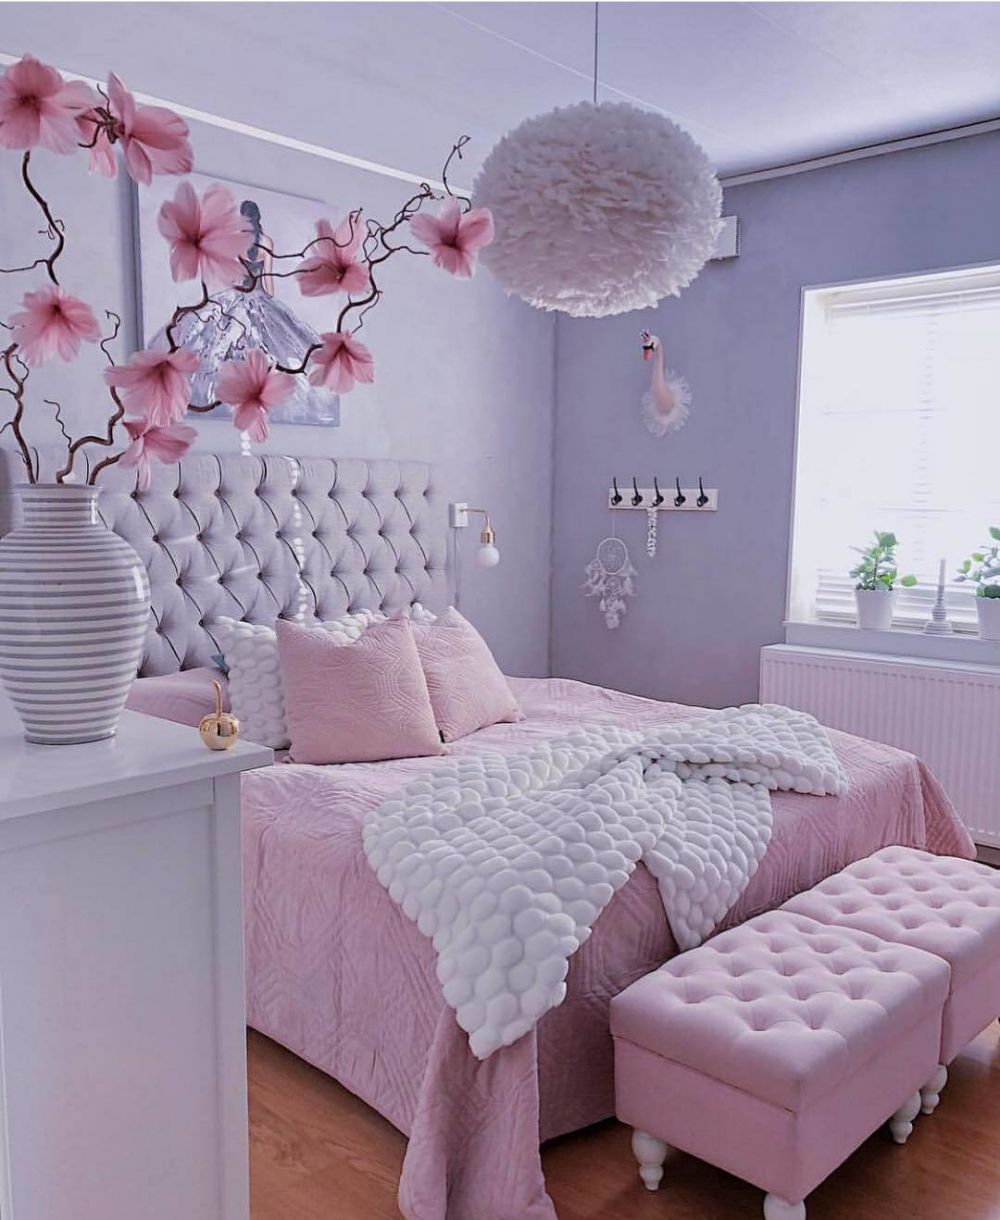 27 Ide Cantik Desain Kamar Tidur Pink Yang Belum Banyak Diketahui